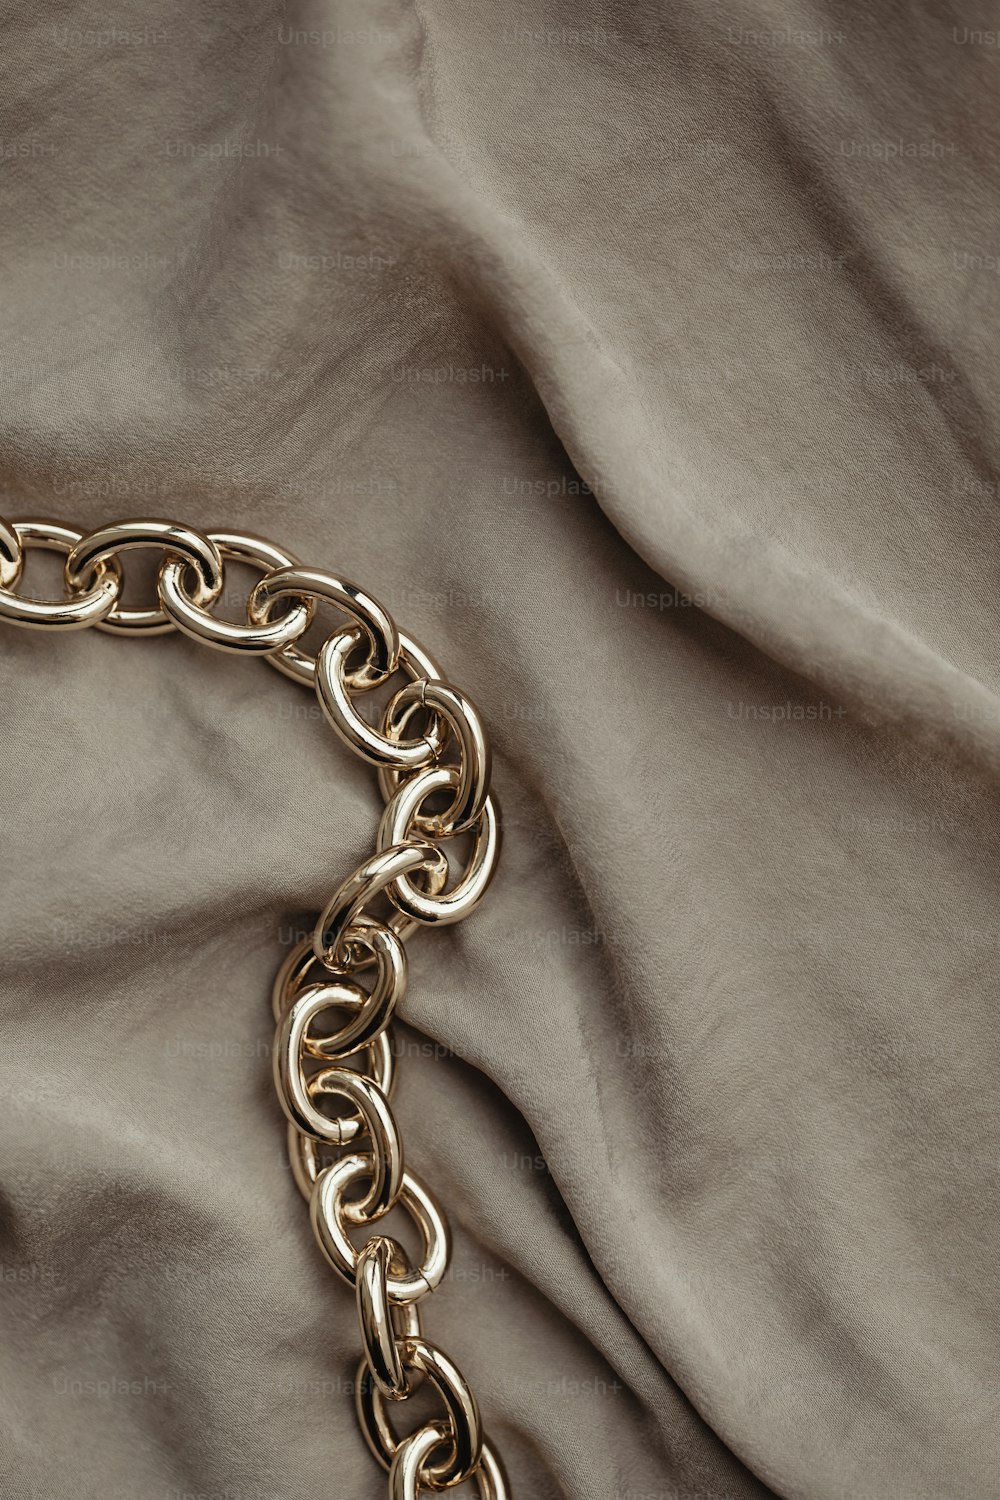 Un primo piano di una catena d'oro su un letto